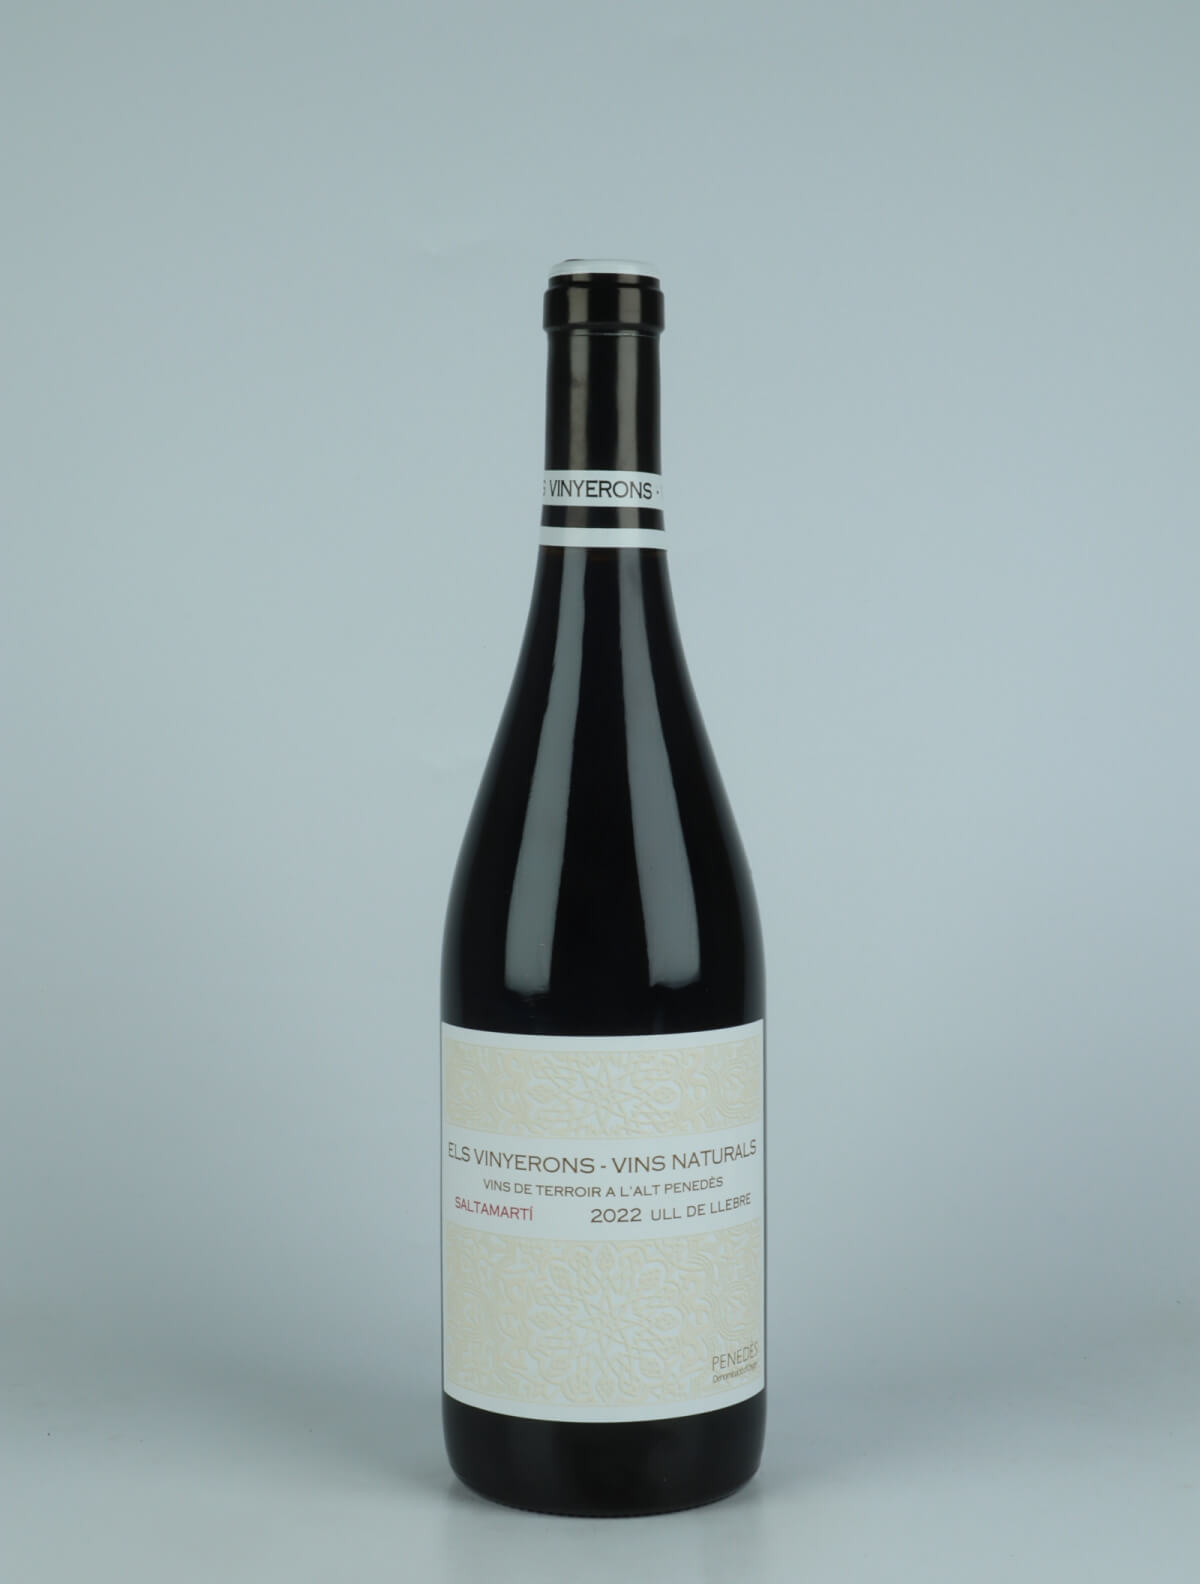 A bottle 2022 Saltamarti Red wine from Els Vinyerons, Penedès in Spain